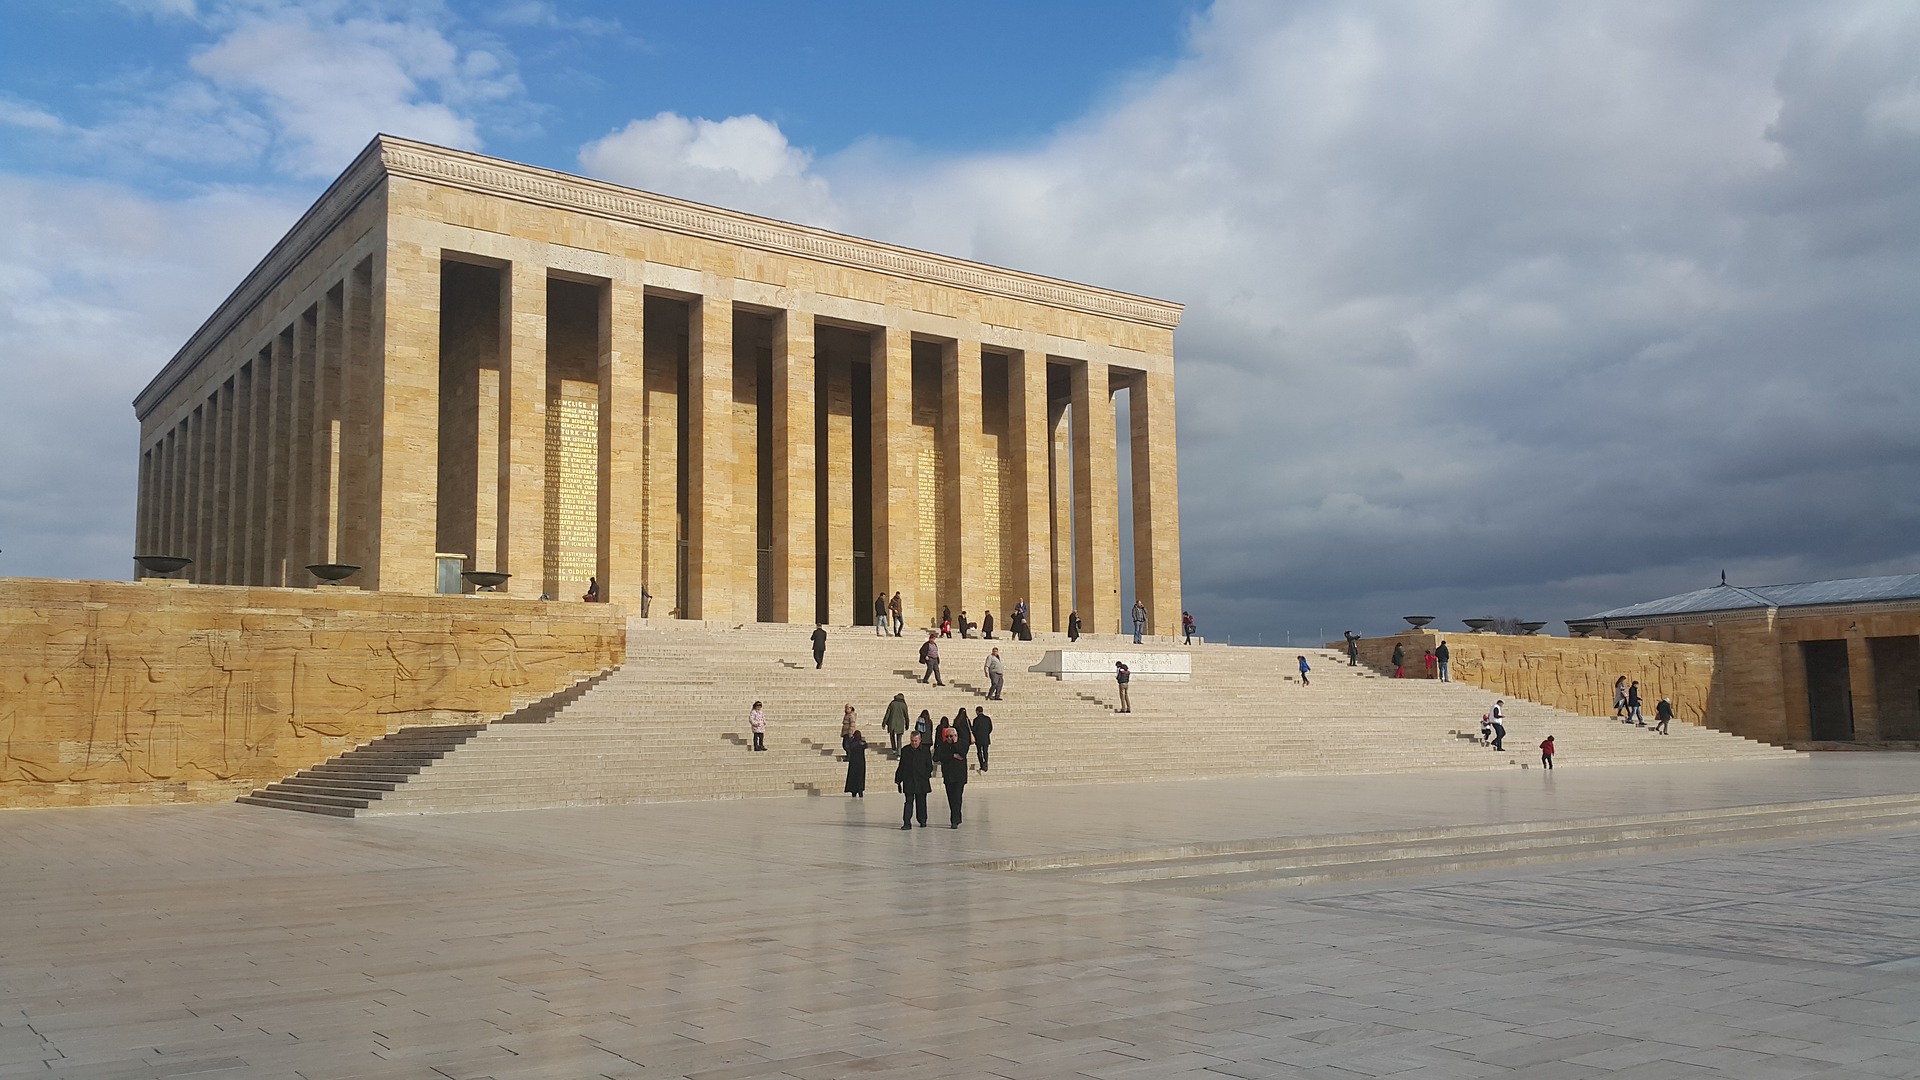 Anıtkabir, mausoleum of Mustafa Kemal Atatürk in Ankara, Turkey